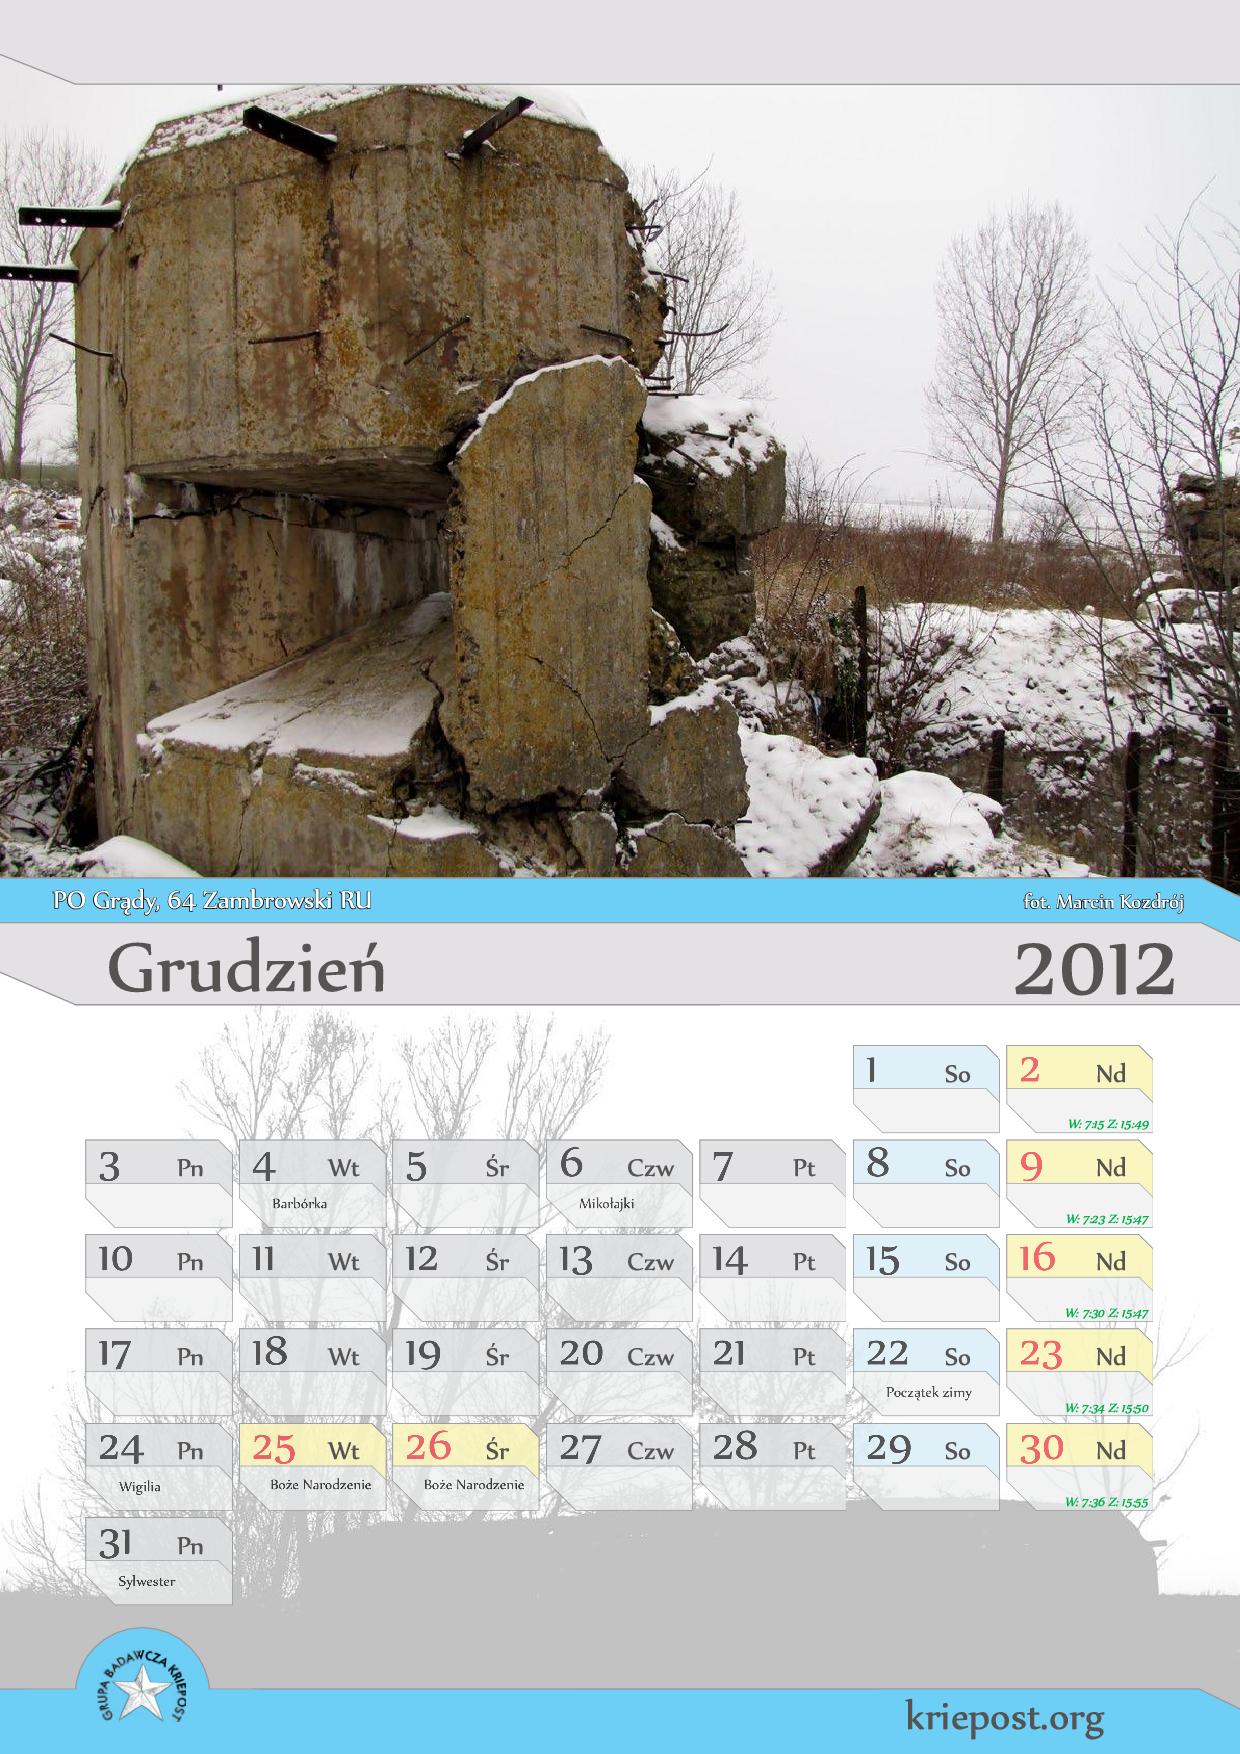 GB Kriepost kalendarz 2012 grudzień